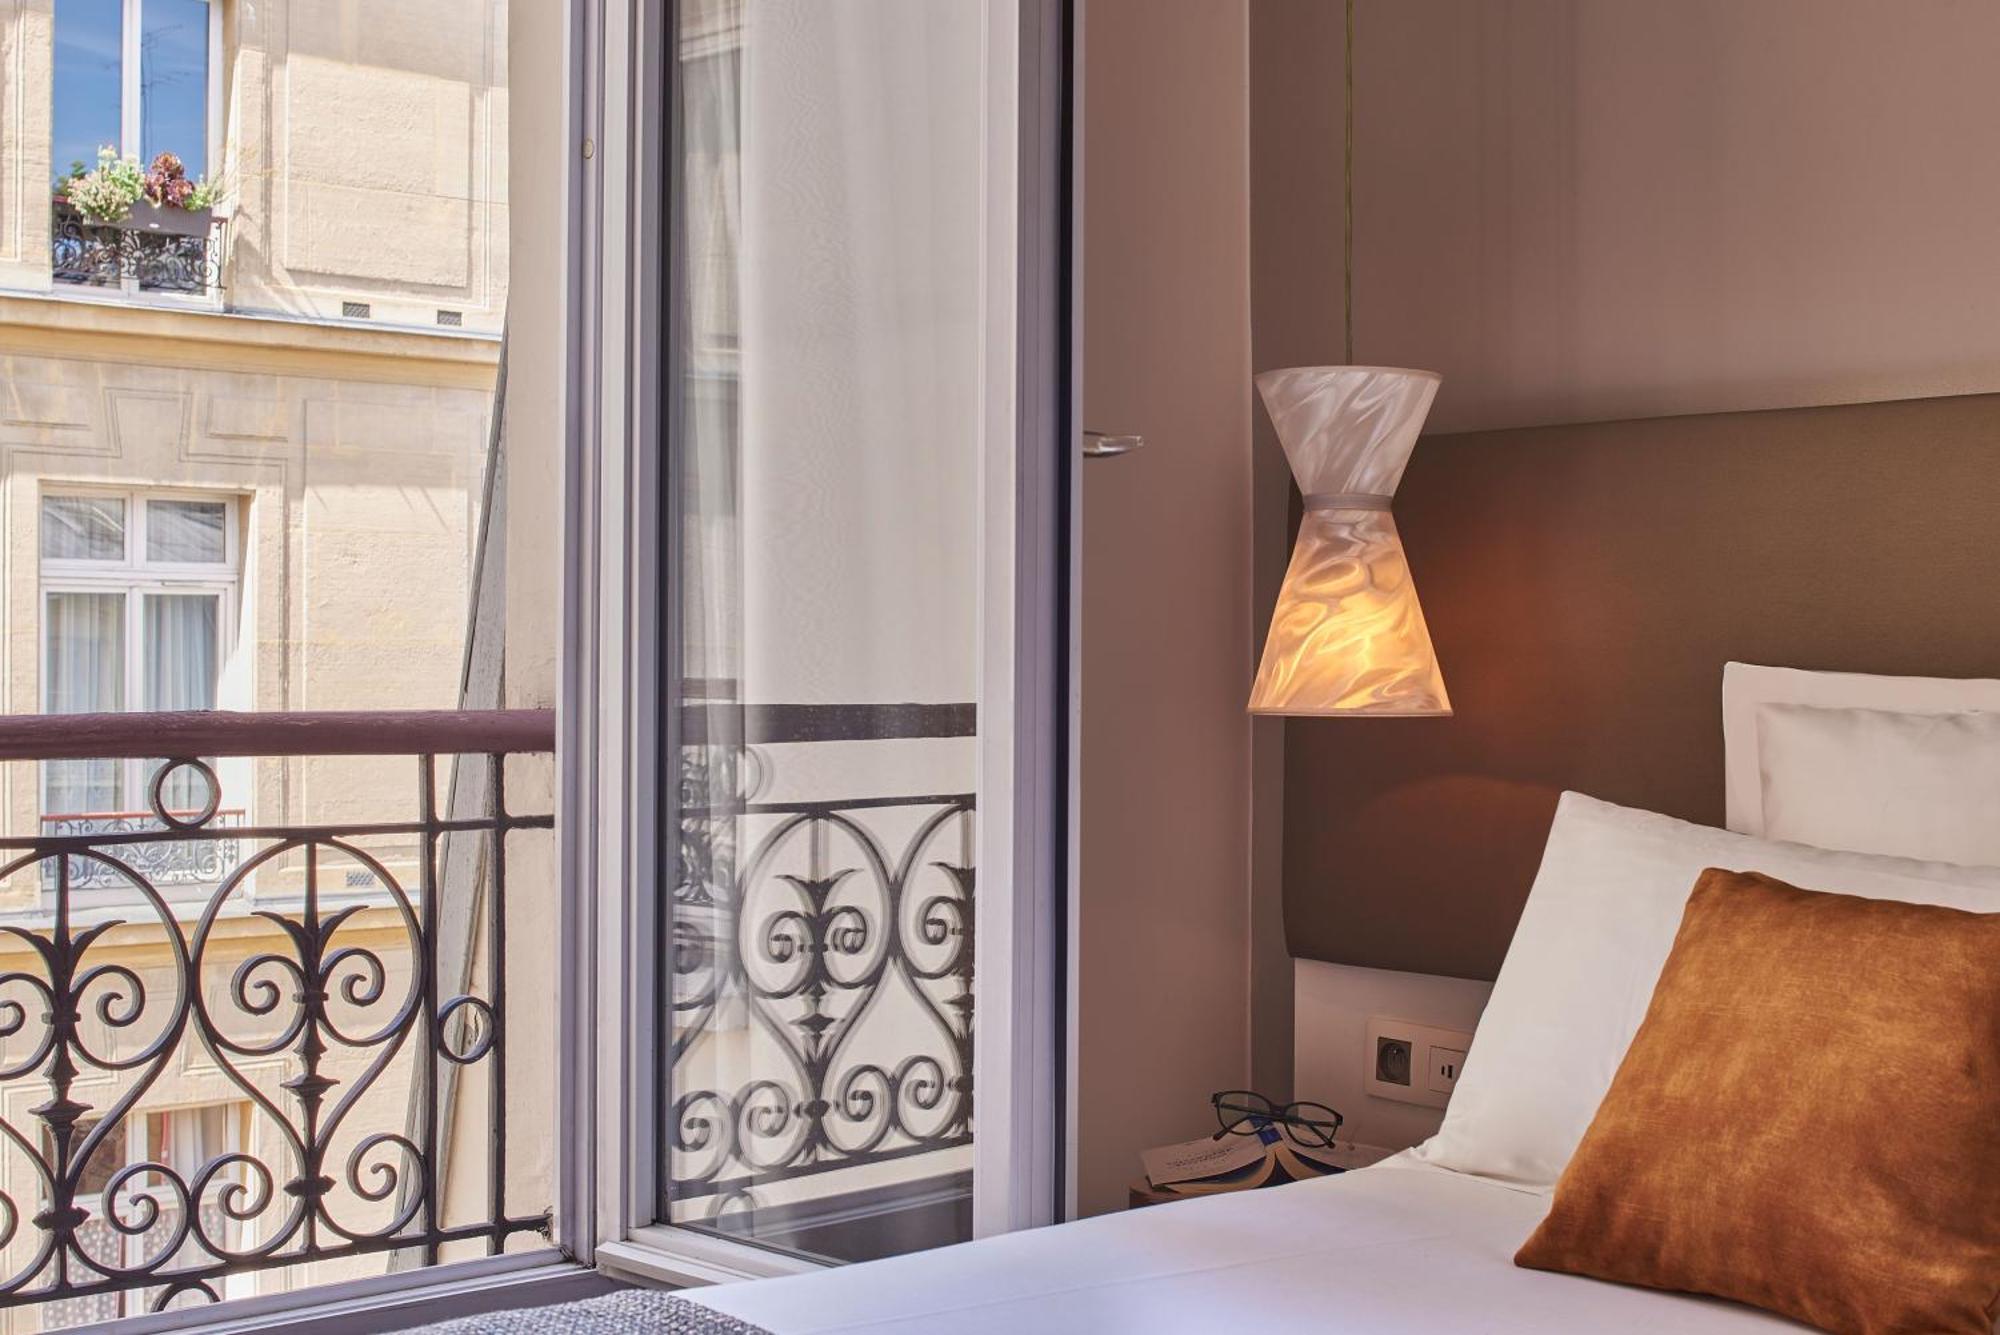 Hotel Magenta 38 By Happyculture Paris Exterior photo